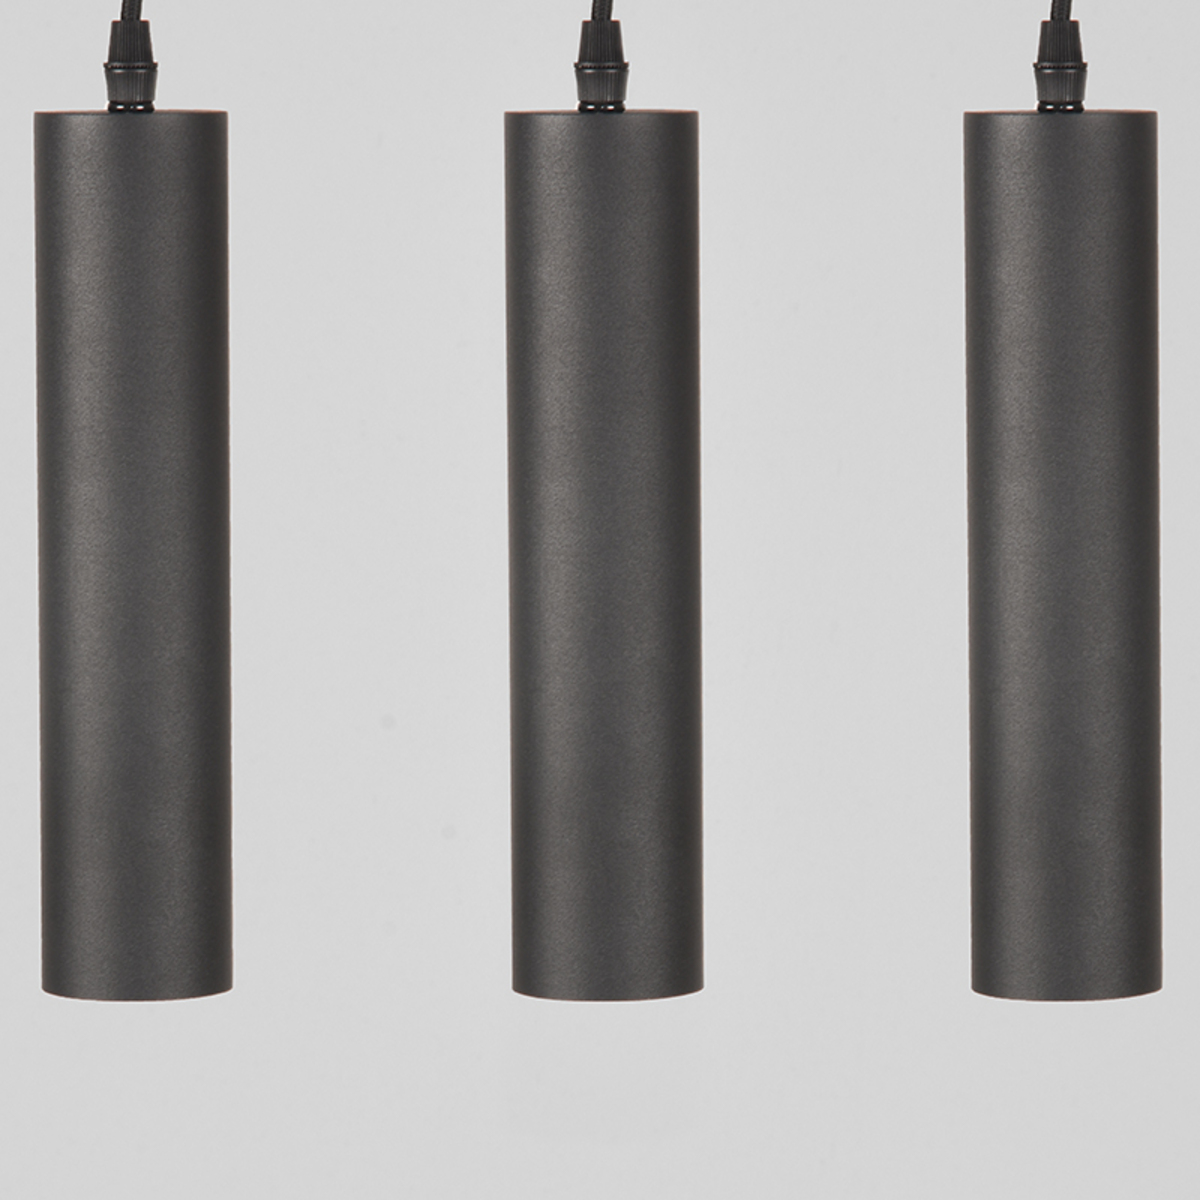 LABEL51 Hanglamp Ferroli - Zwart - Metaal Zwart Hanglamp